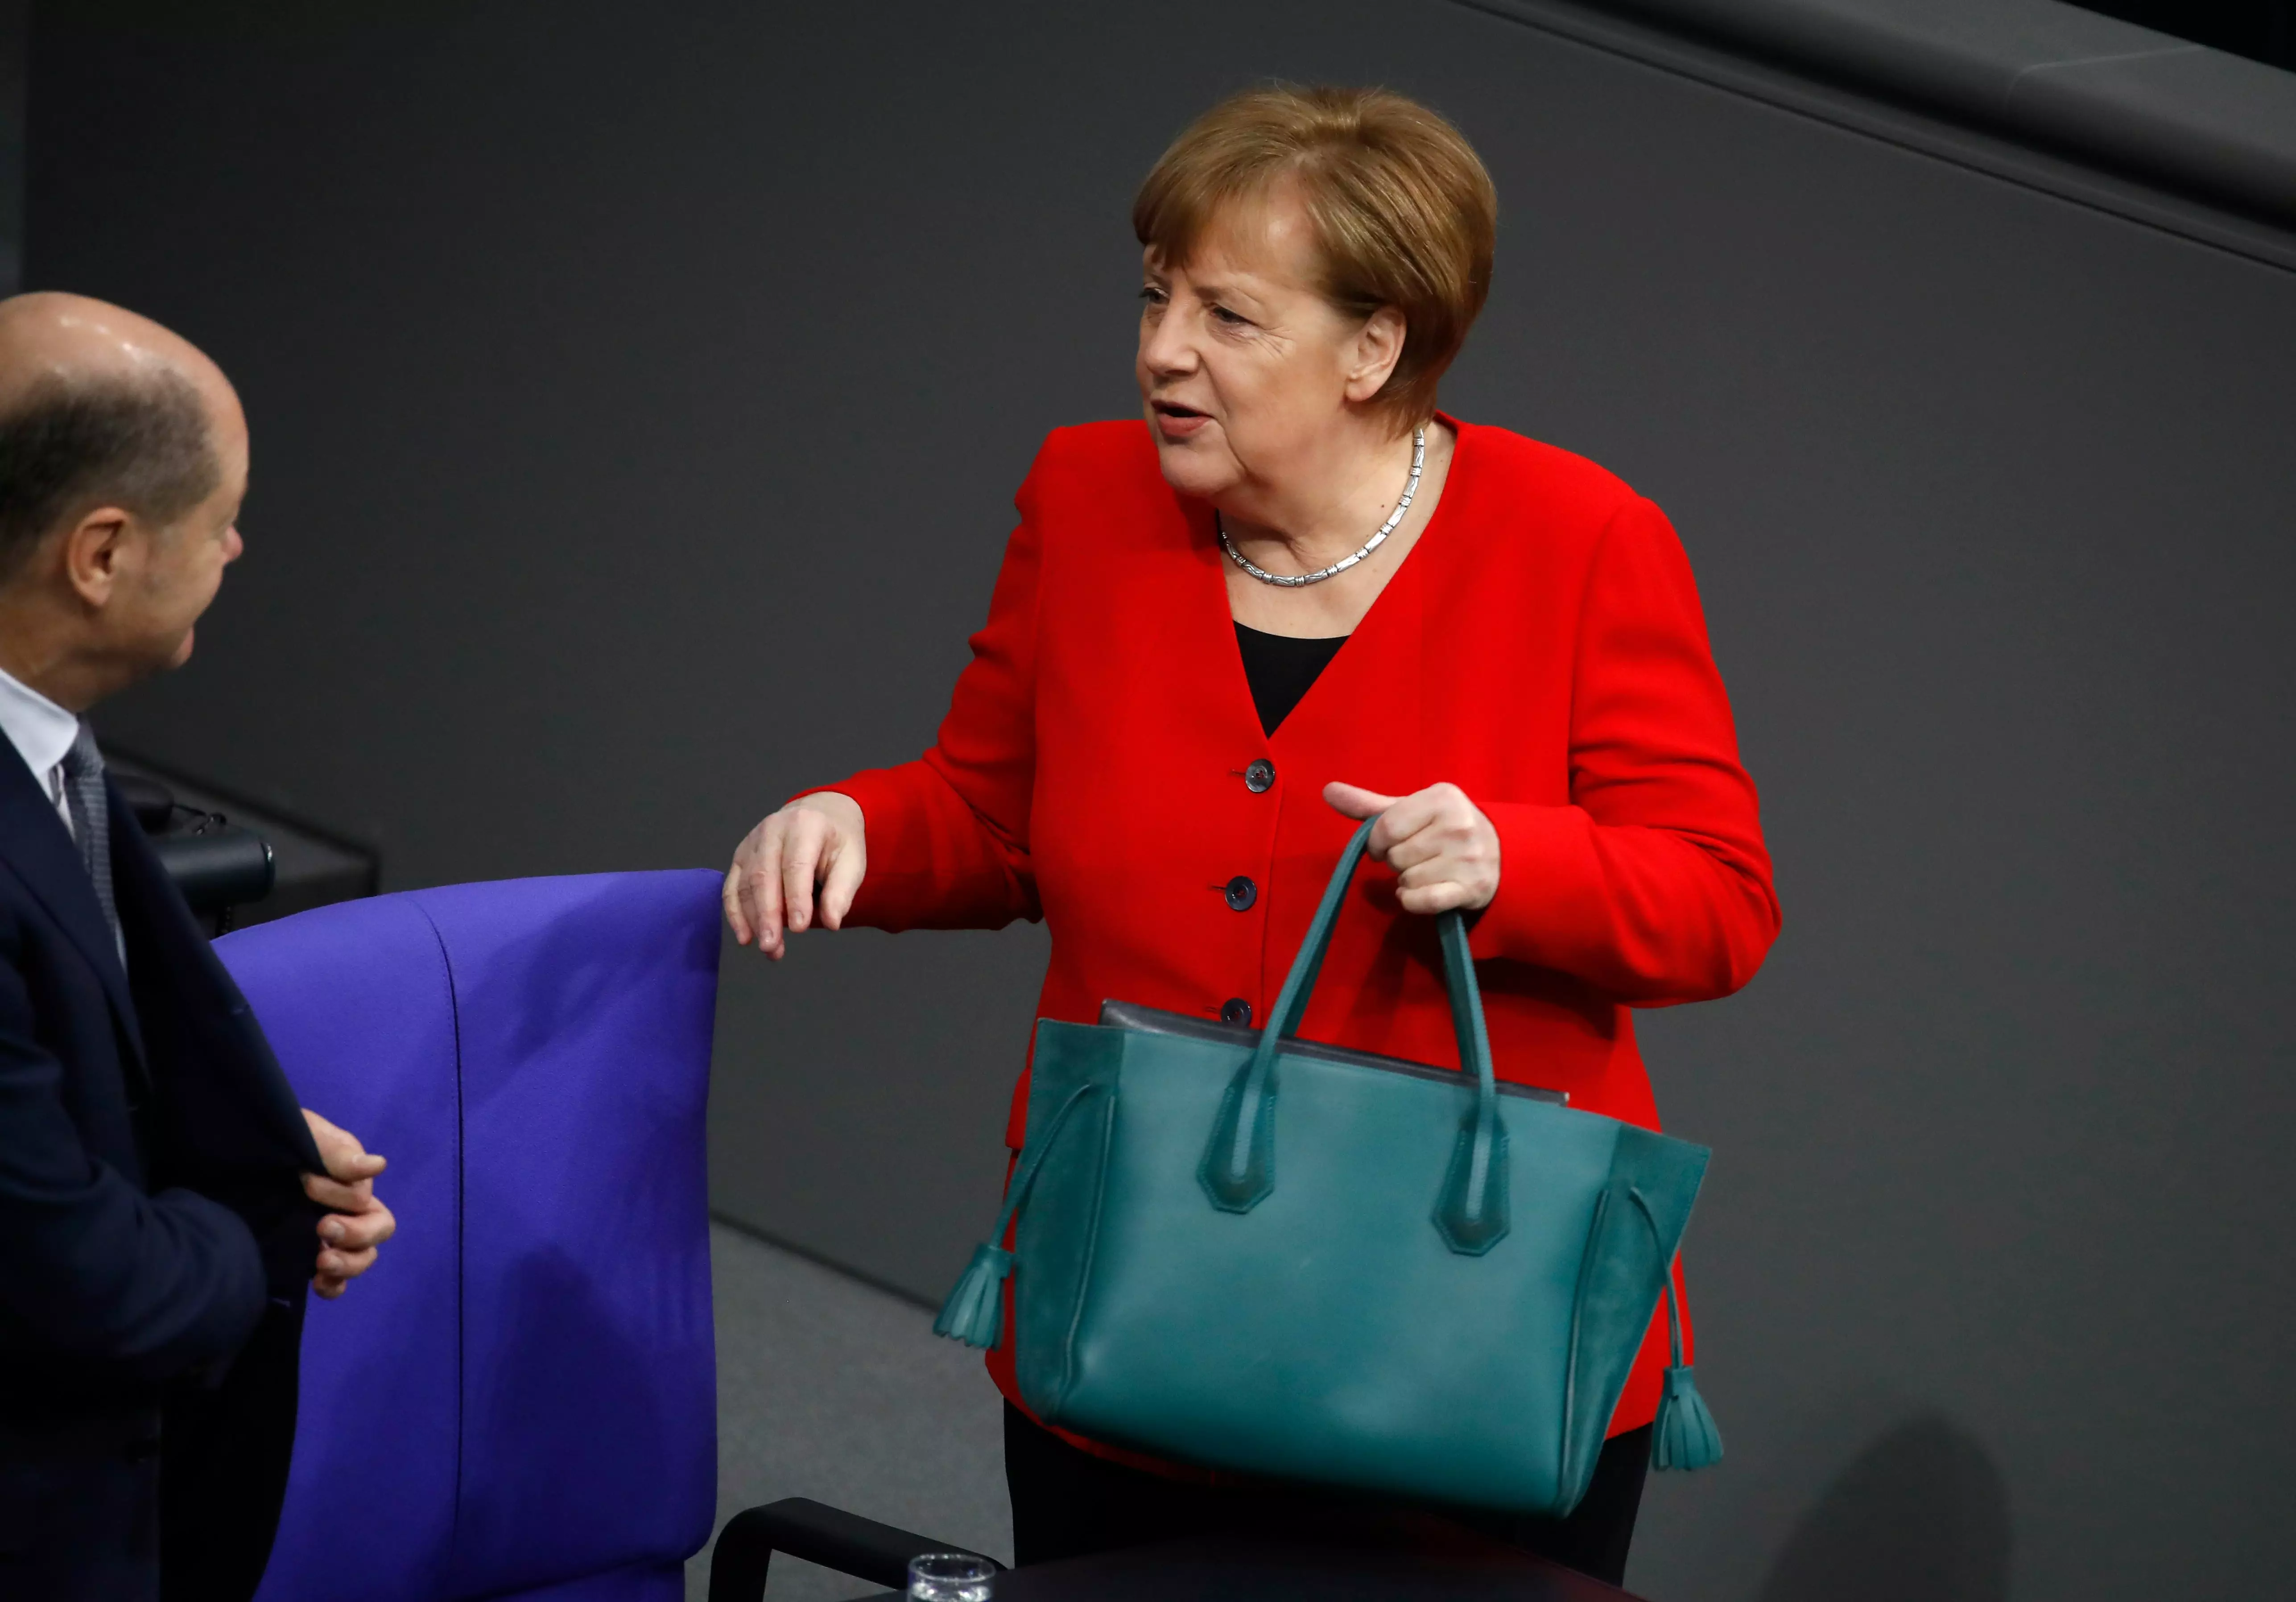 Изюминка образа немецкого политика – изумрудная сумка